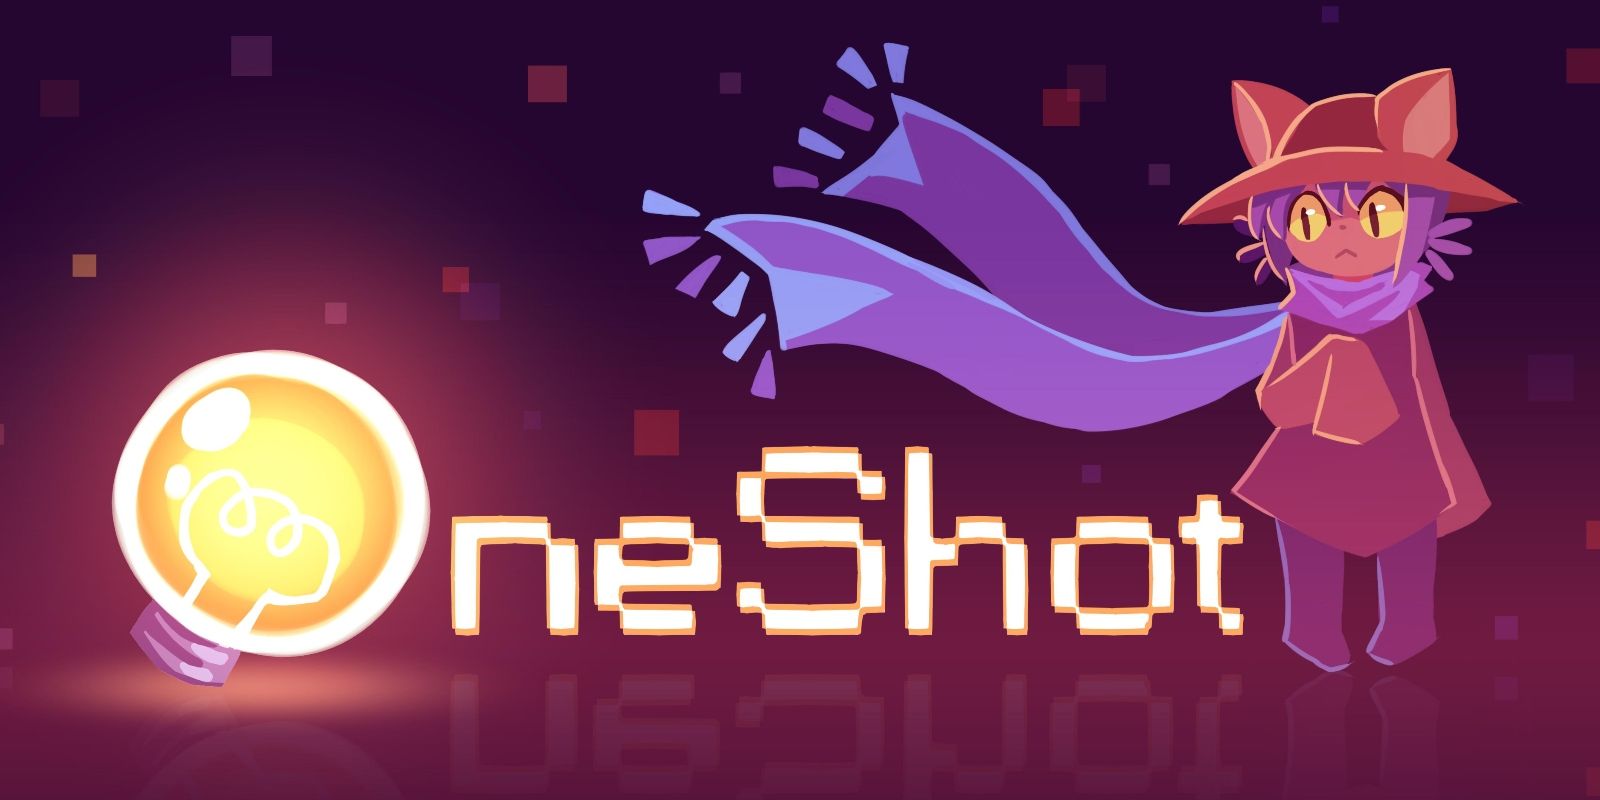 oneshot game